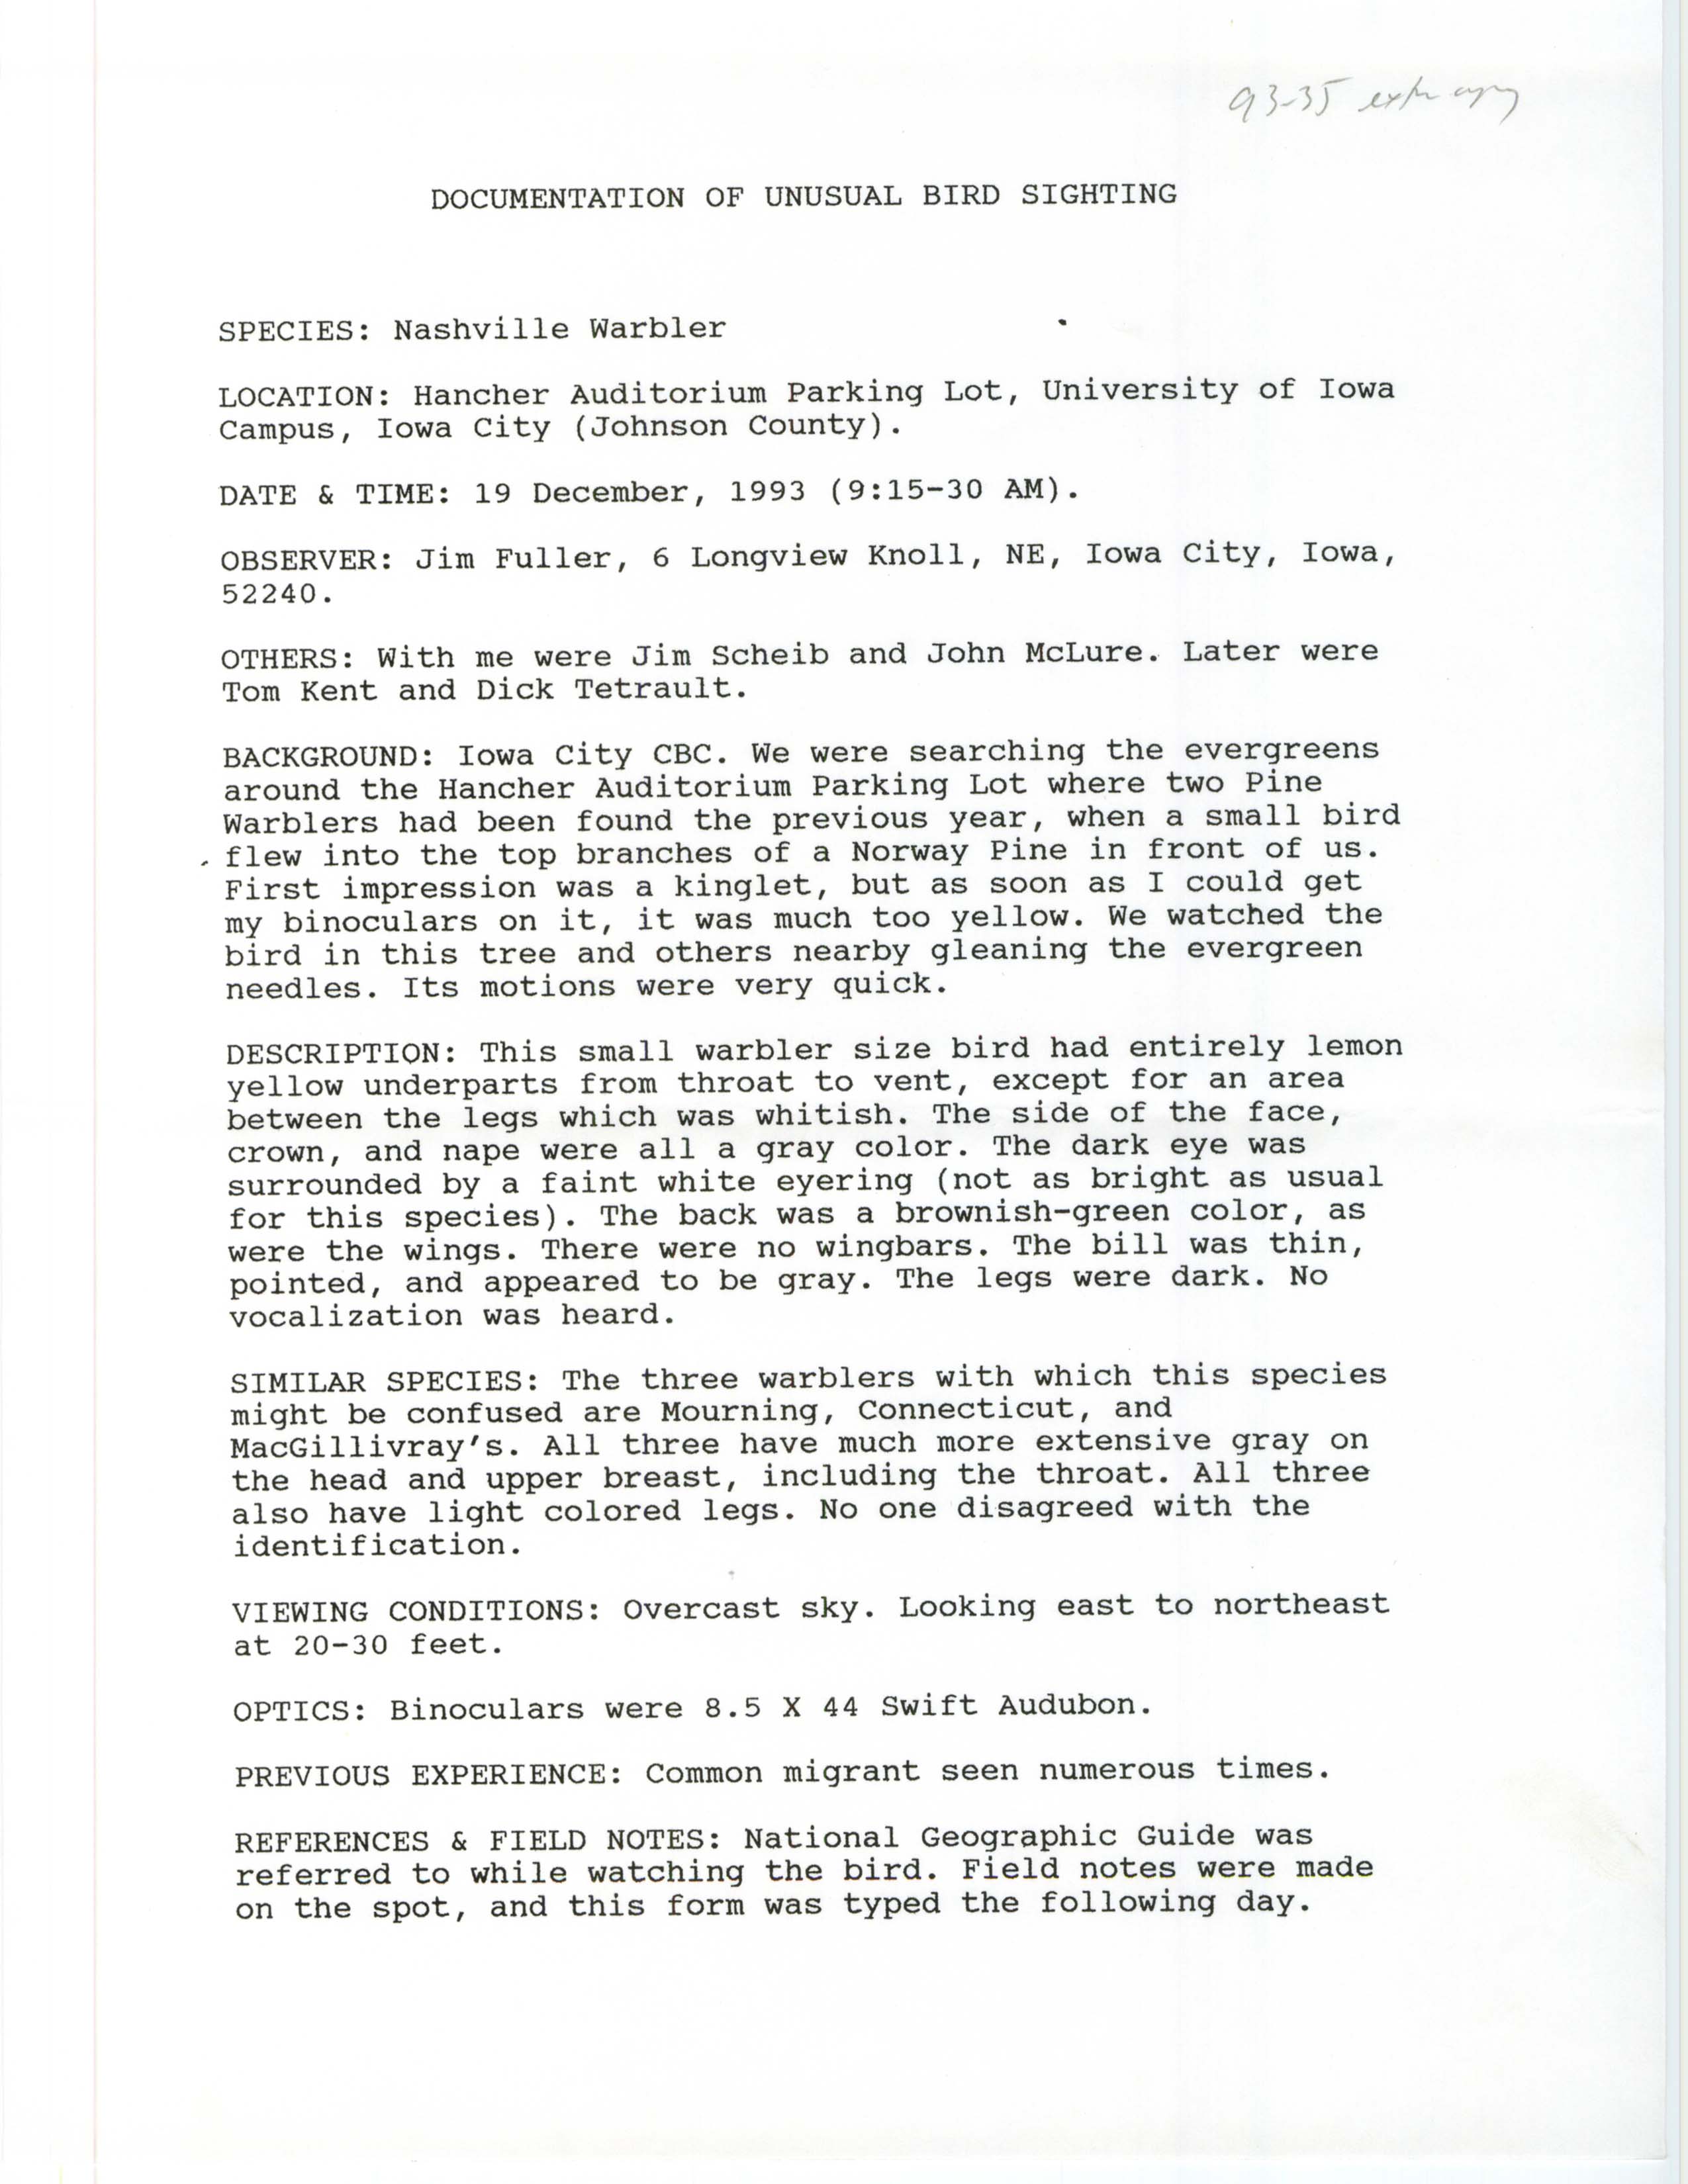 Rare bird documentation form for Nashville Warbler at Hancher Auditorium in Iowa City in 1993